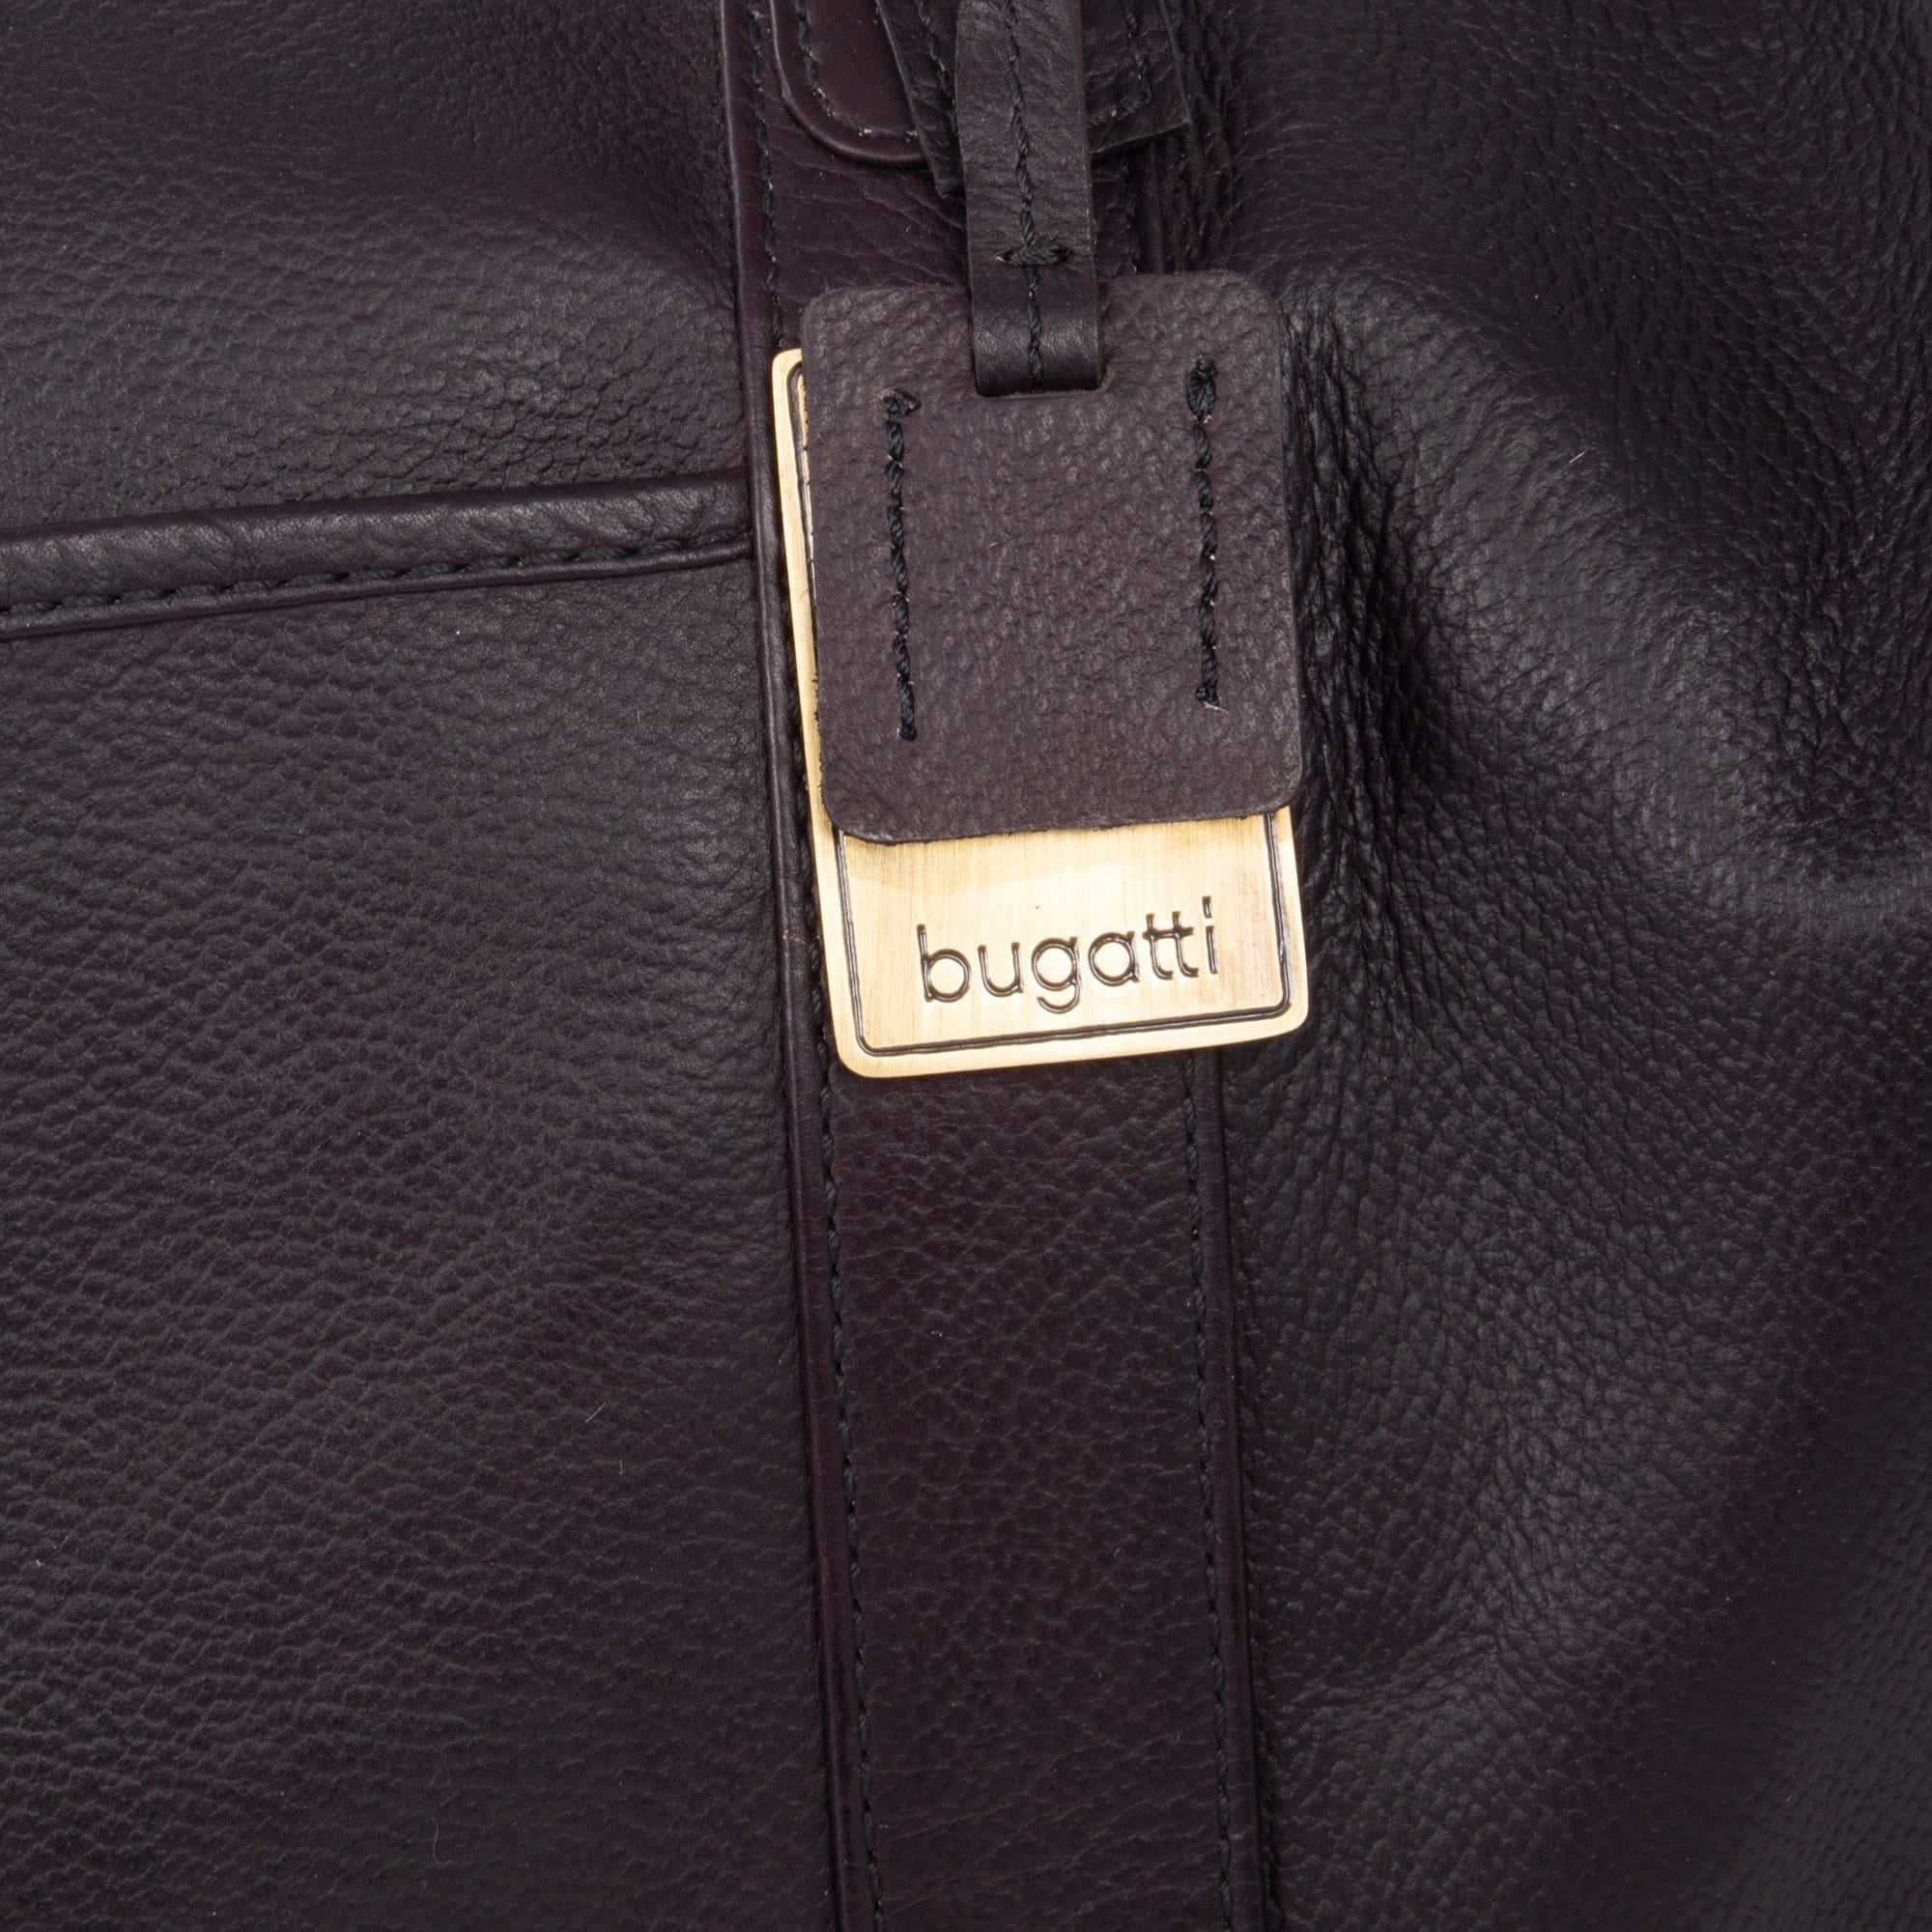 bugatti duf613-cognac soledad 21 inch duffle bag, cognac